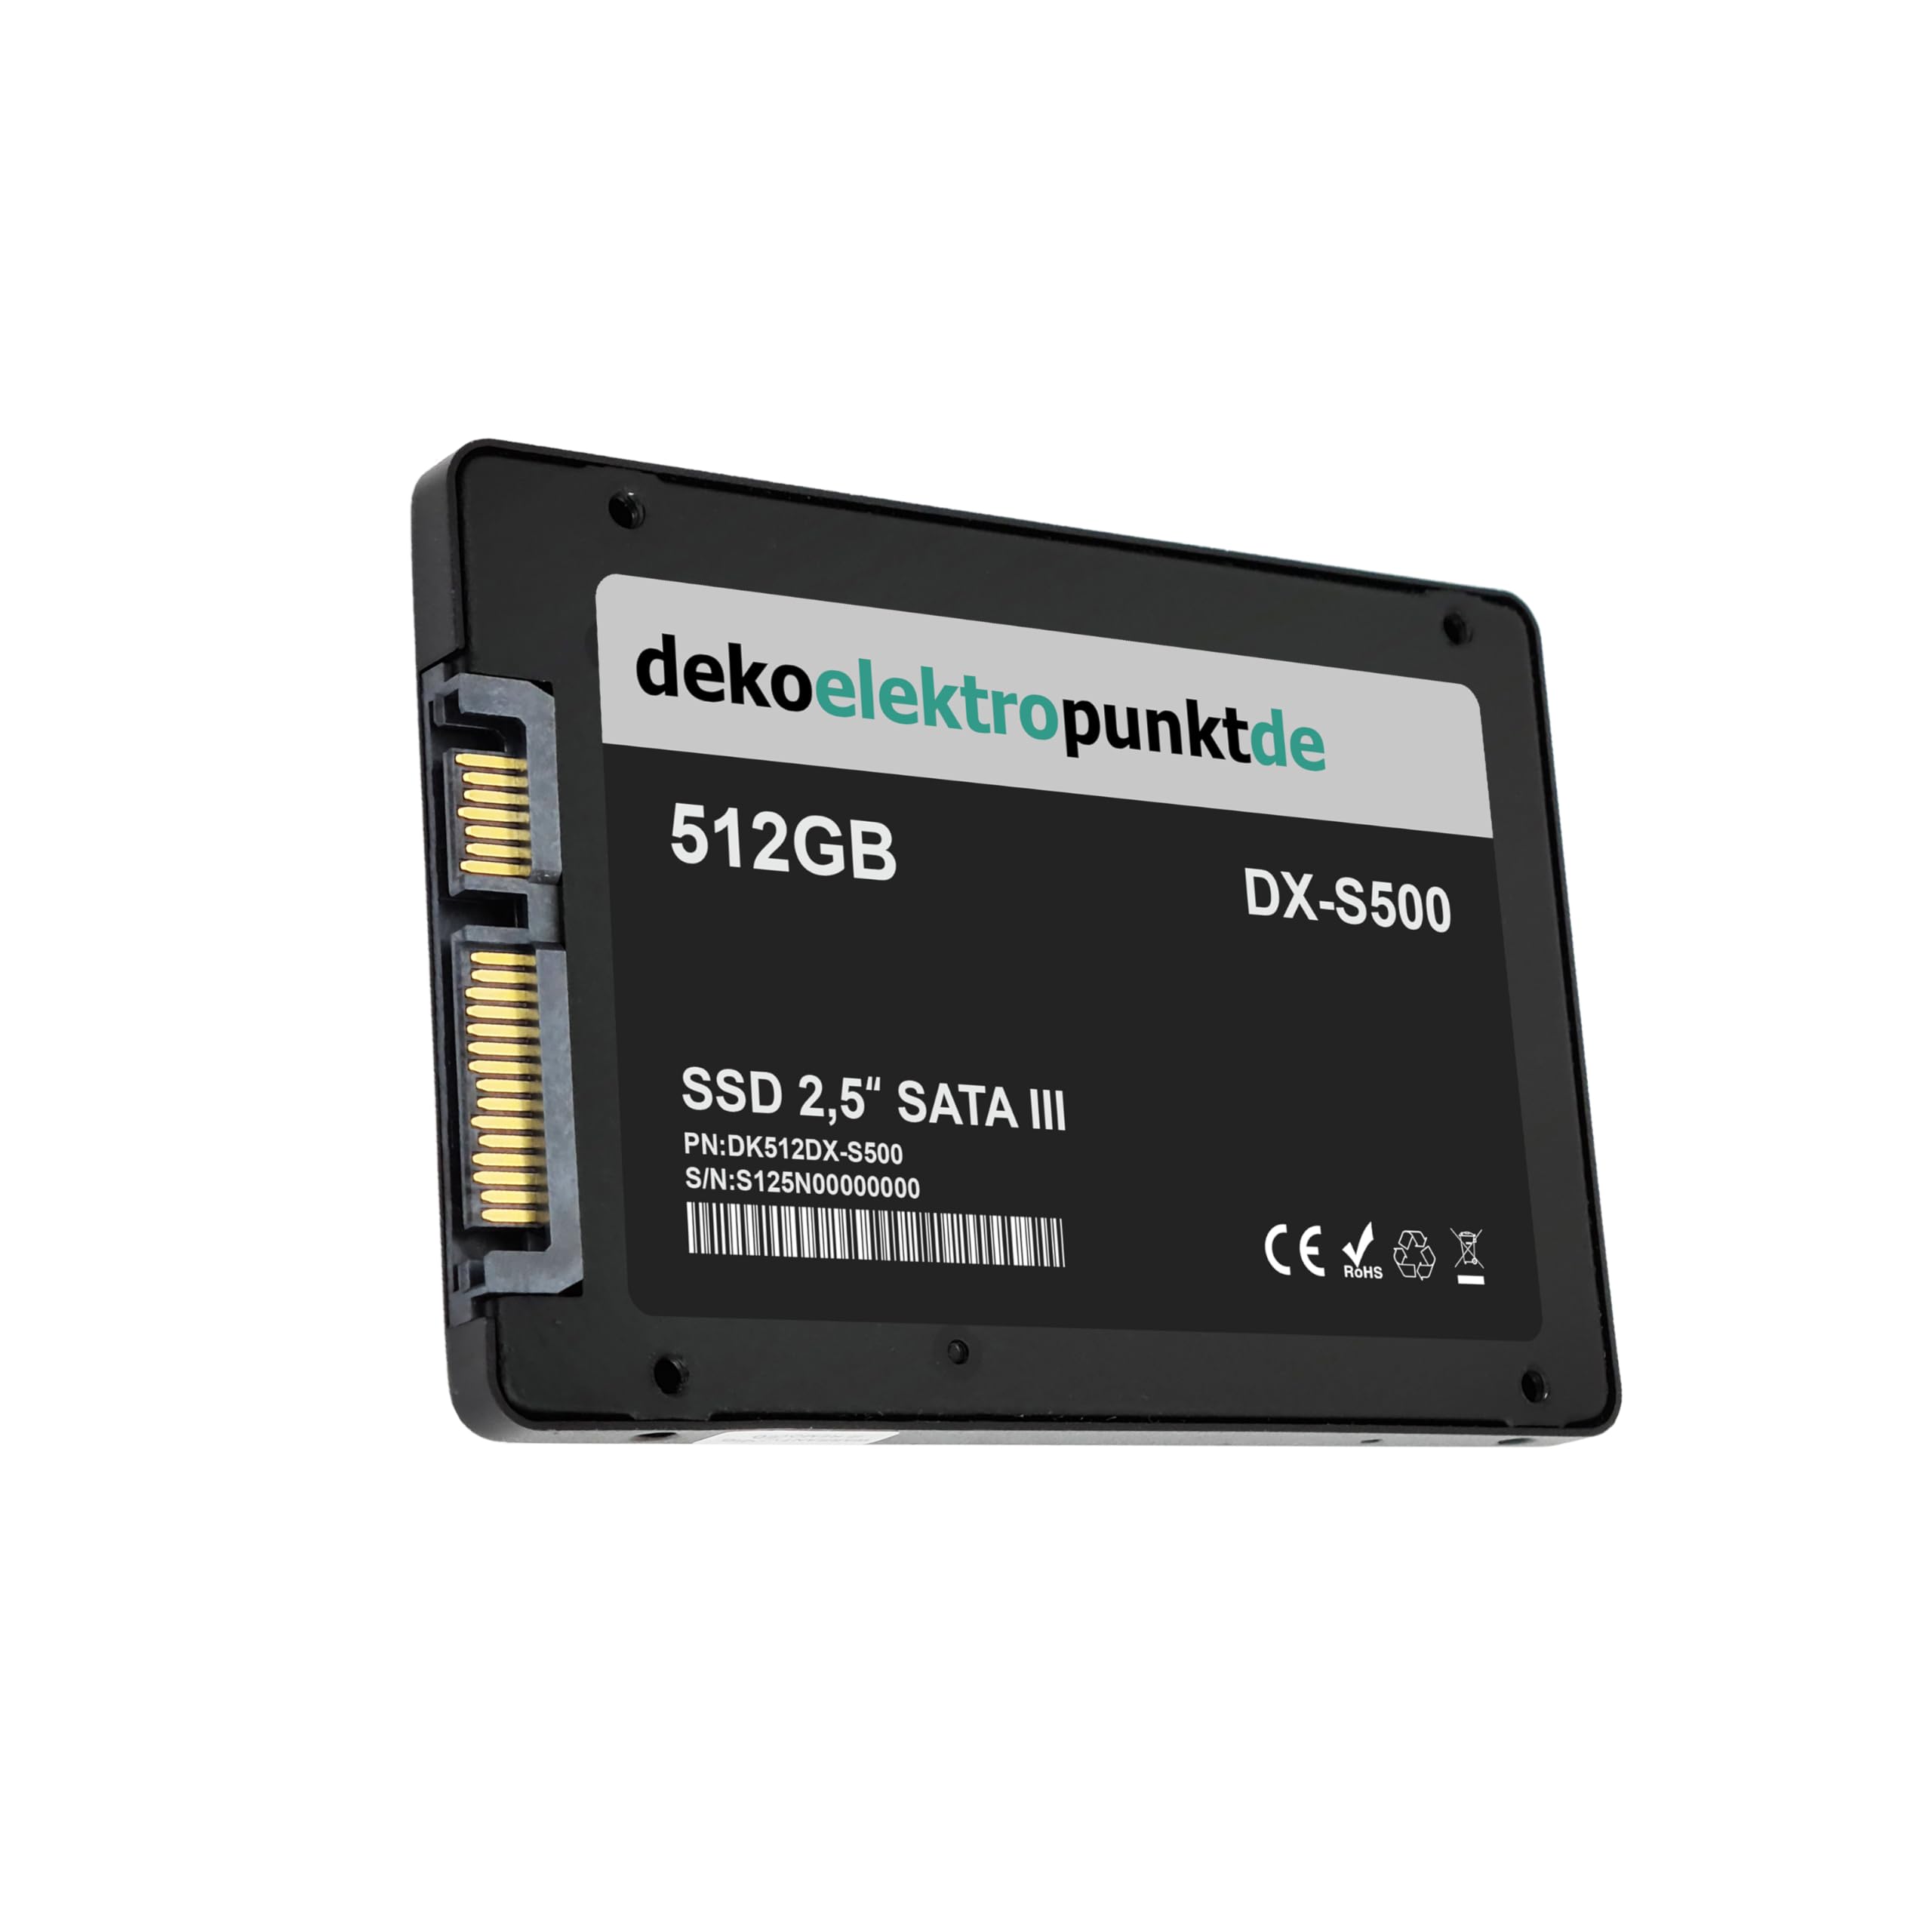 dekoelektropunktde 512GB SSD Festplatte kompatibel mit Toshiba Satellite L750 L750-16J L750-16V L750-16W49